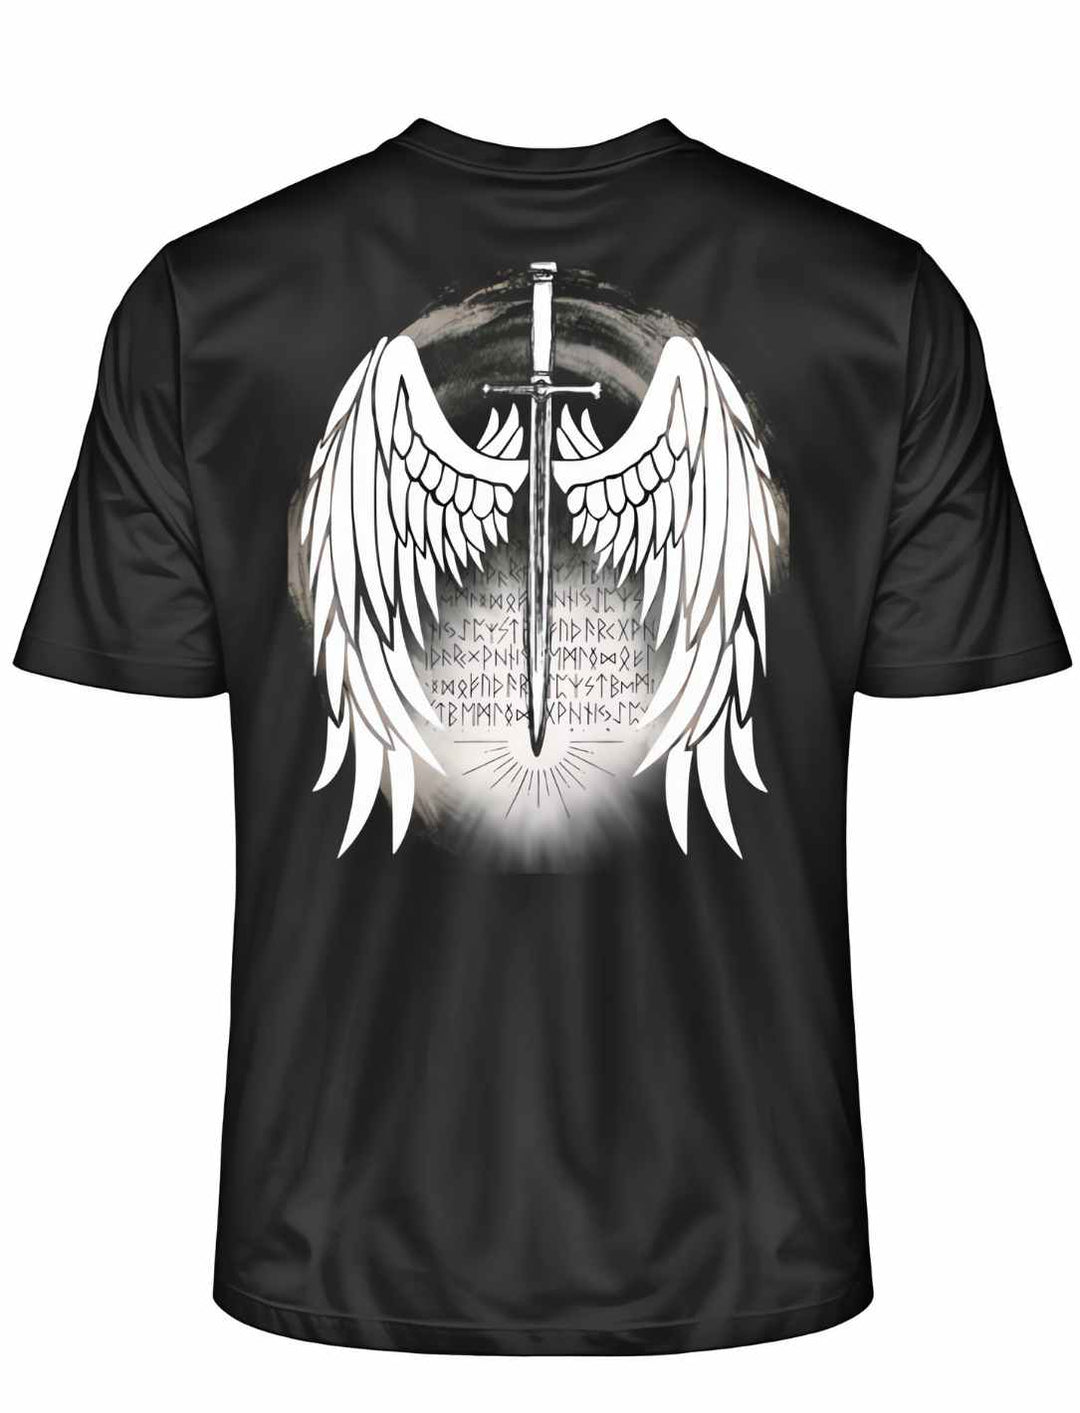 Klinge des Runenwächters T-Shirt in Schwarz mit eindrucksvollem Backprint von Walkürenflügeln und Runenschrift